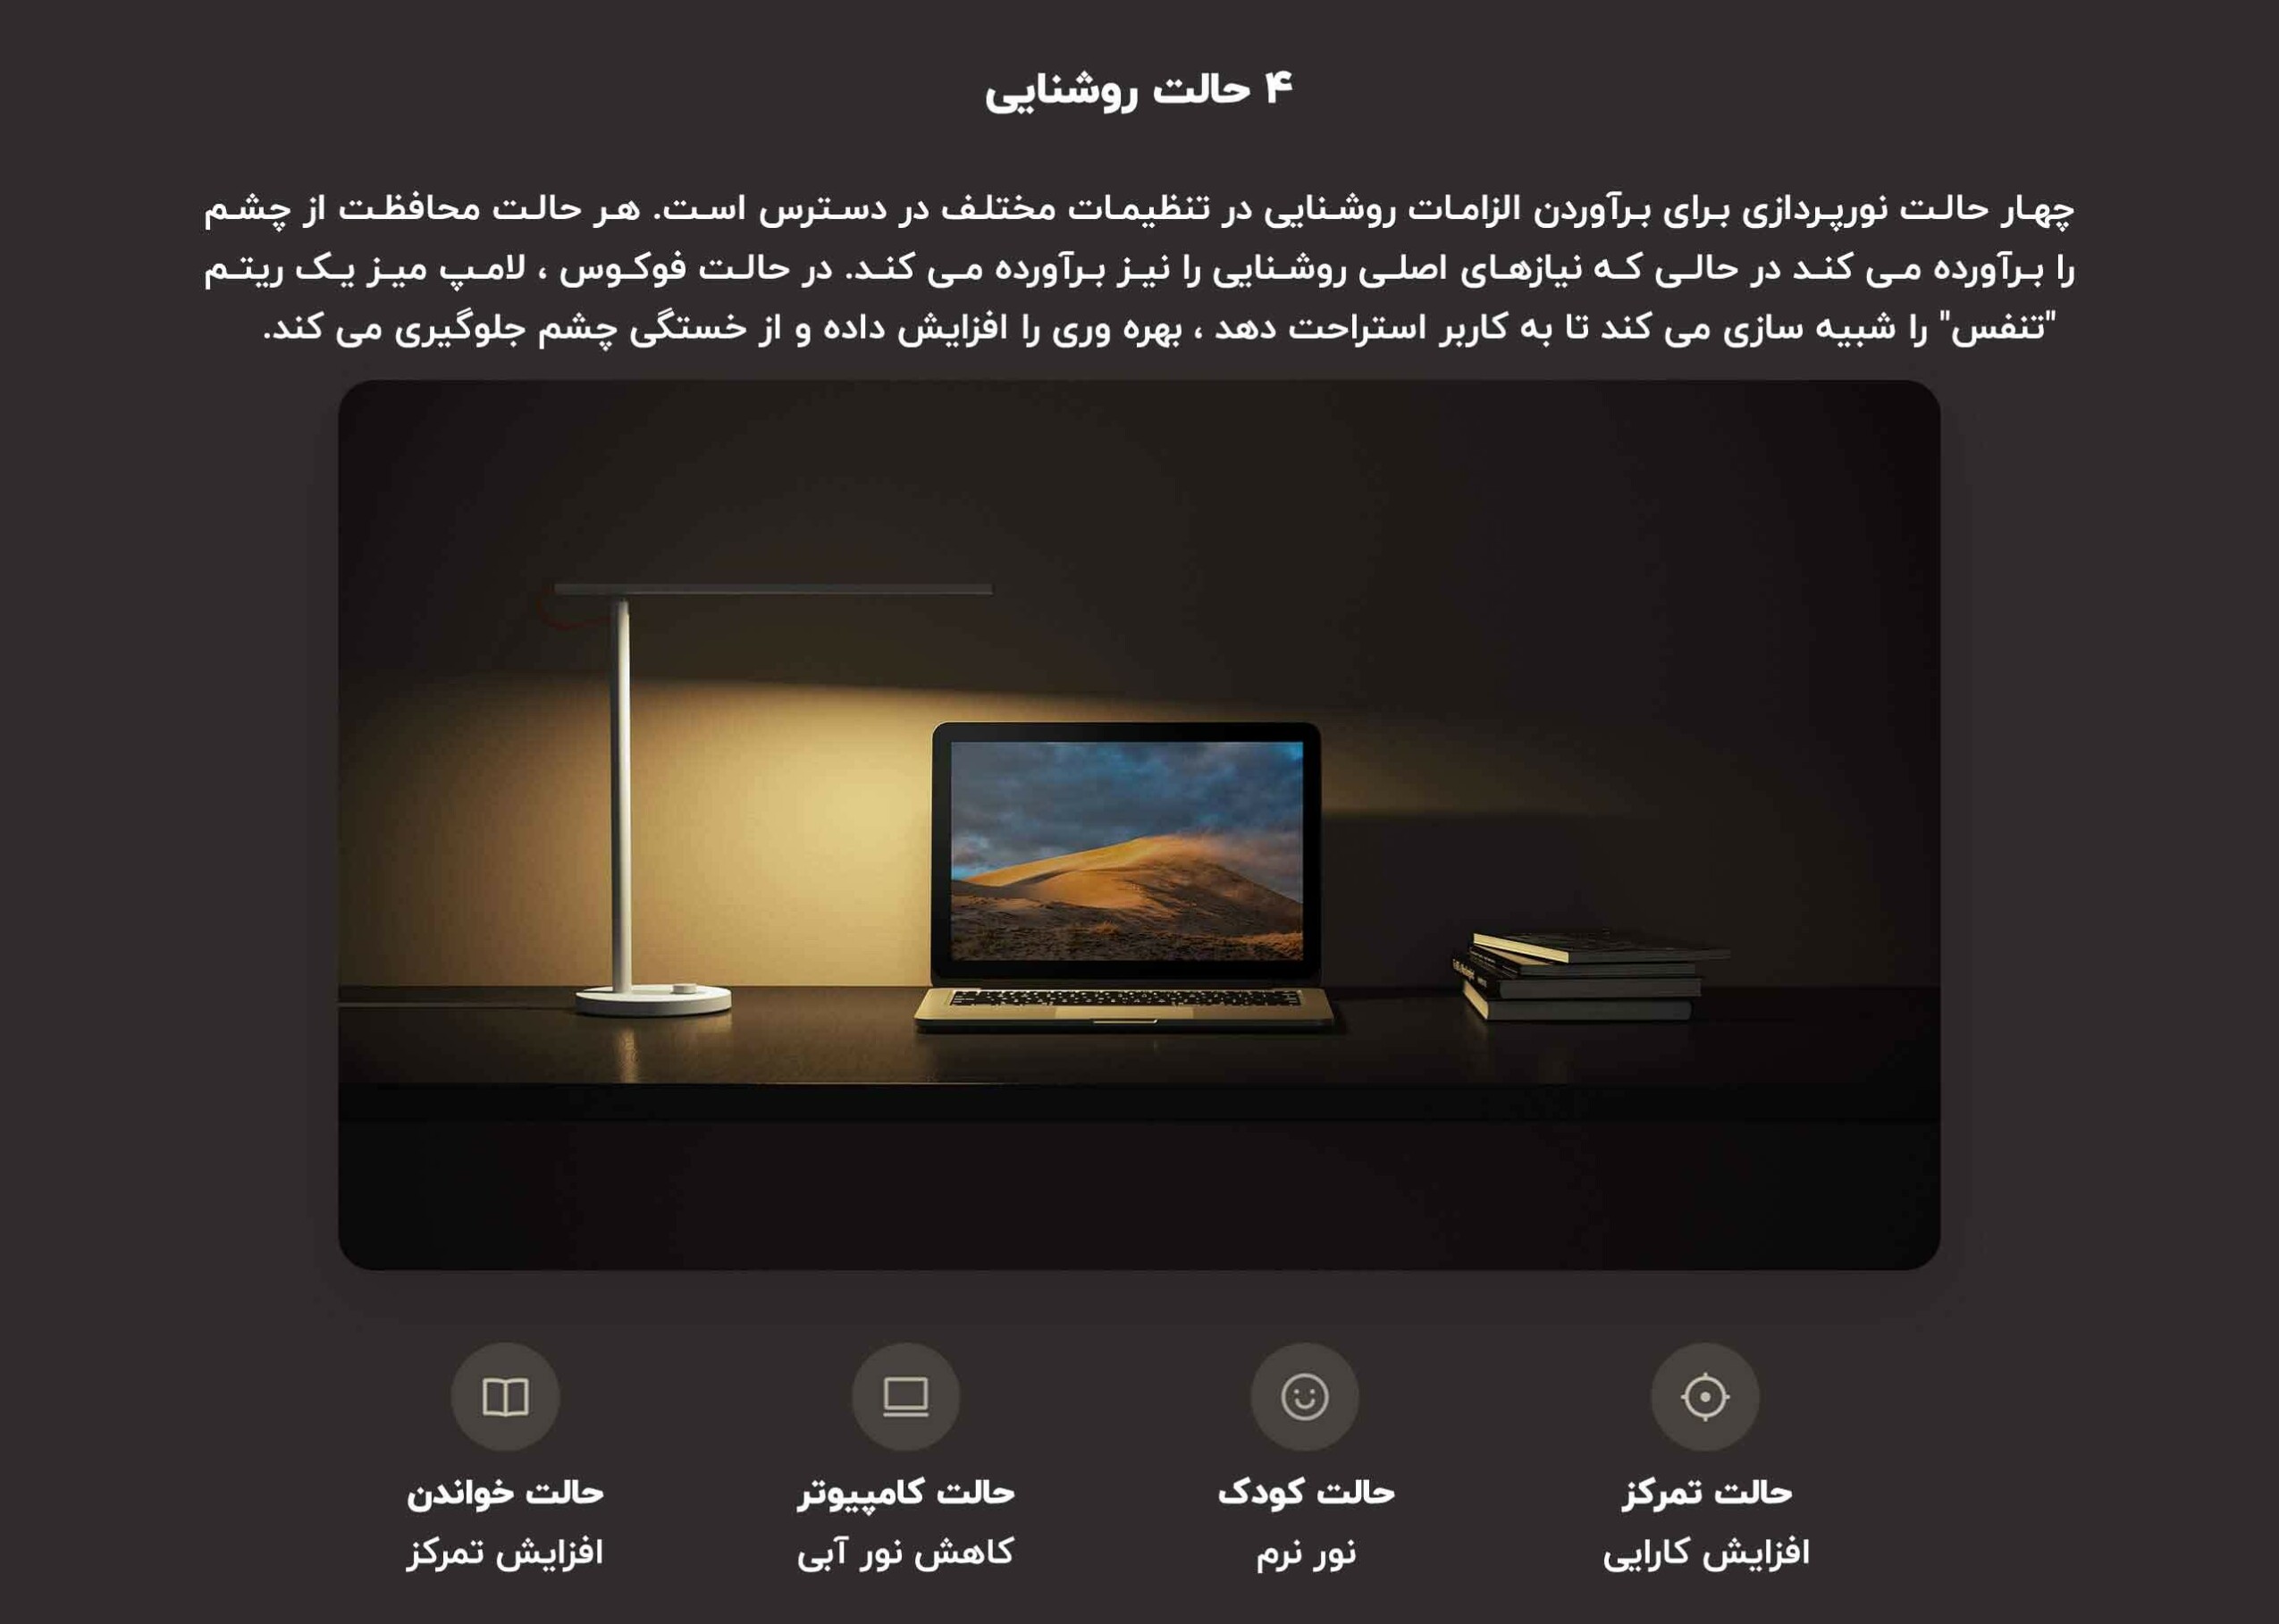 چراغ مطالعه هوشمند شیائومی Mi LED Desk Lamp 1S